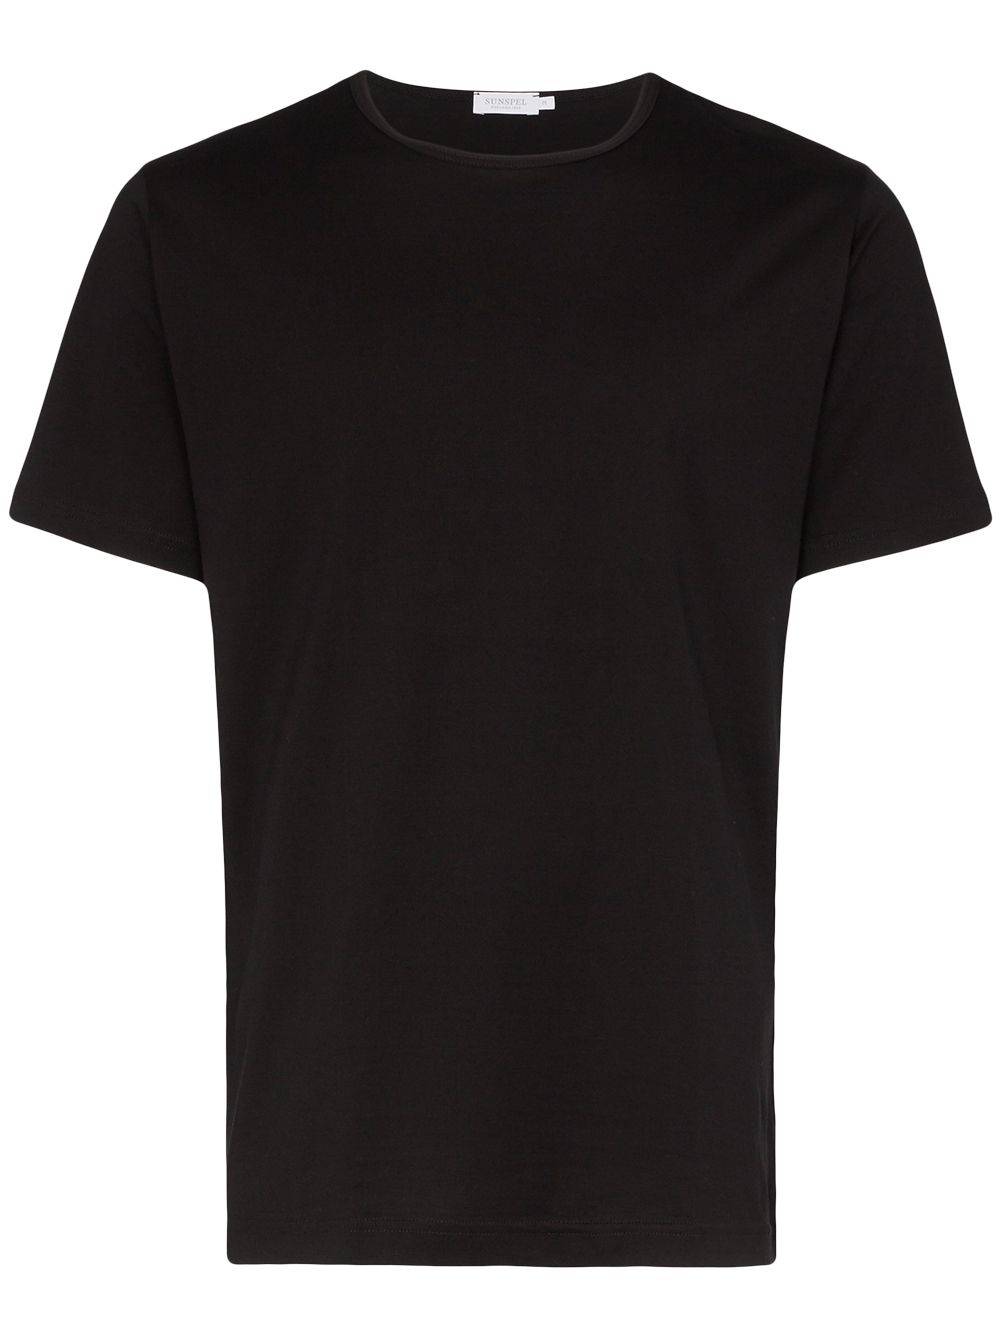 sunspel t-shirt superfine - noir